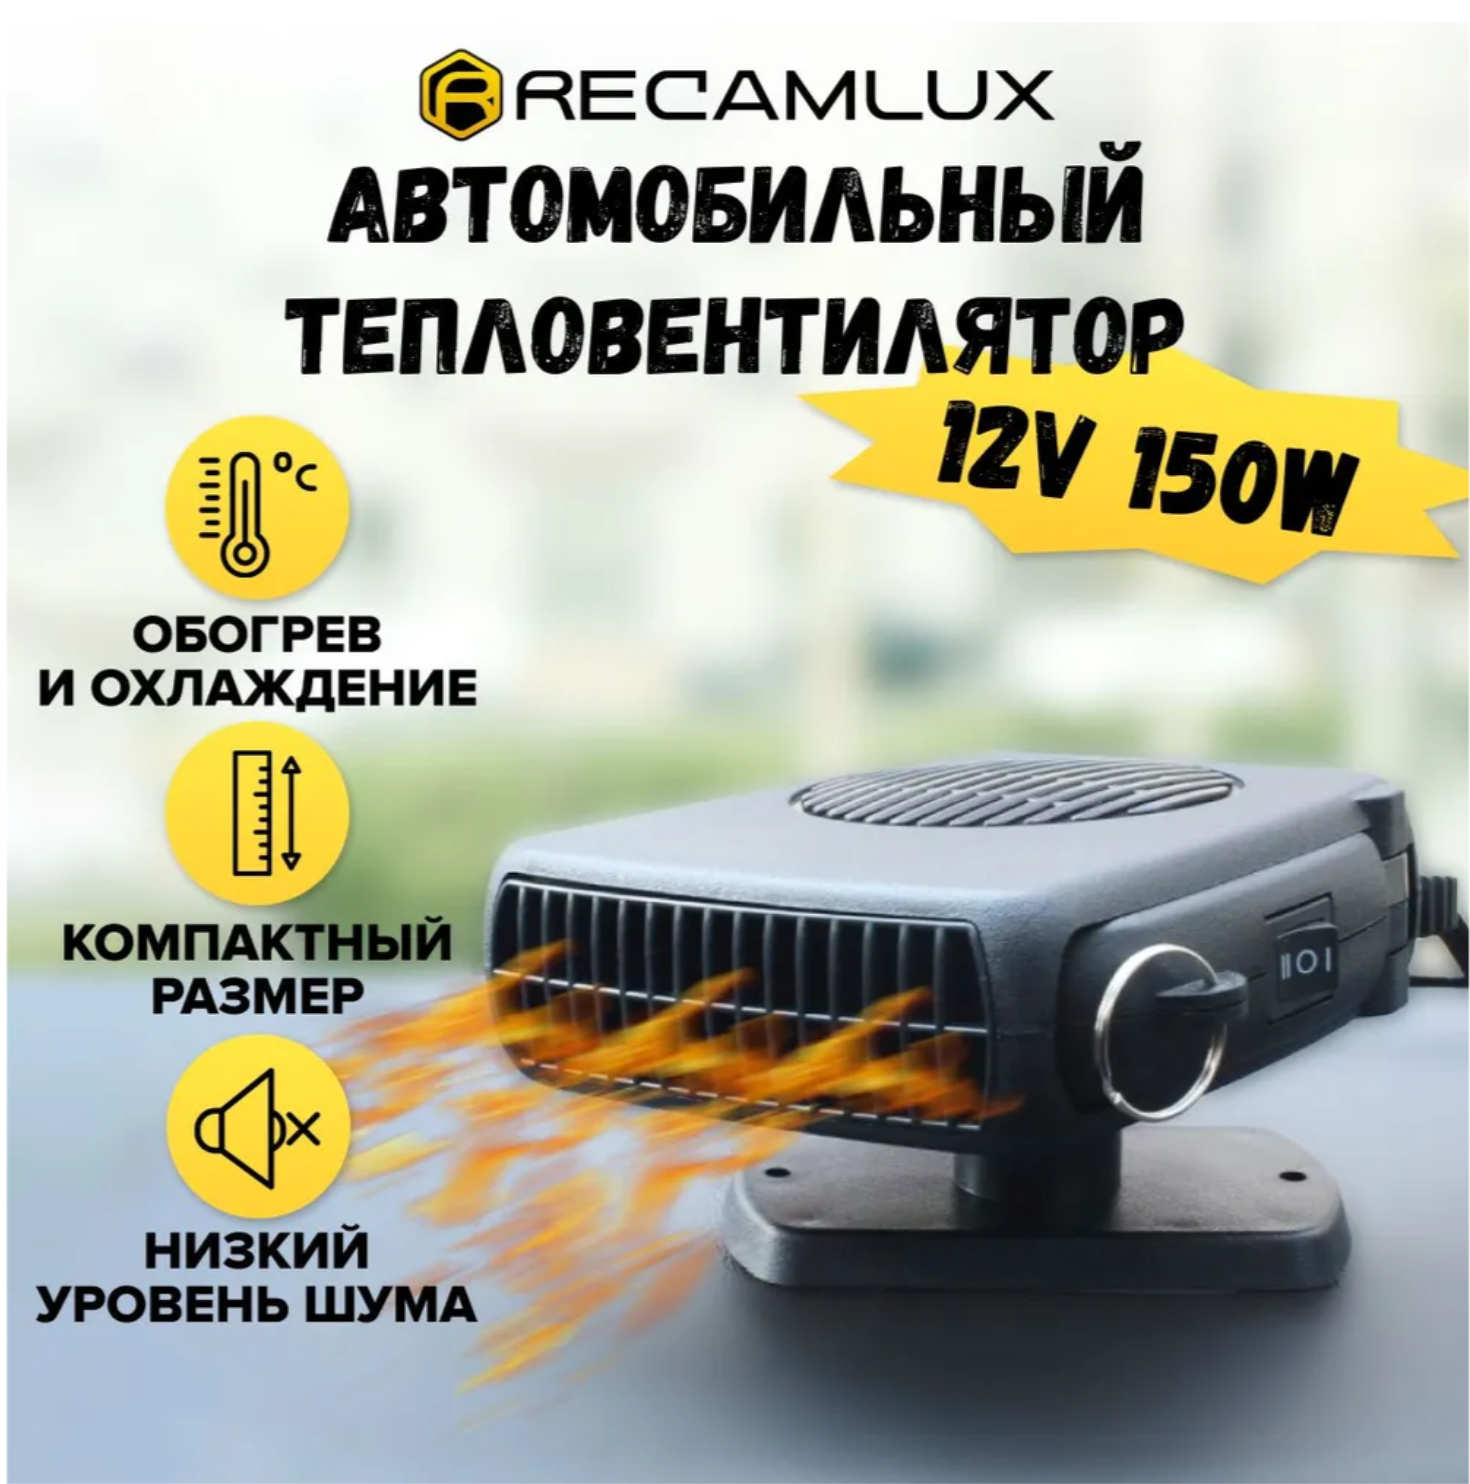 RecamLux / Вентилятор для авто обогреватель в салон от прикуривателя 2 в 1 / Отопитель салона автомобиля / Обогреватель электрический